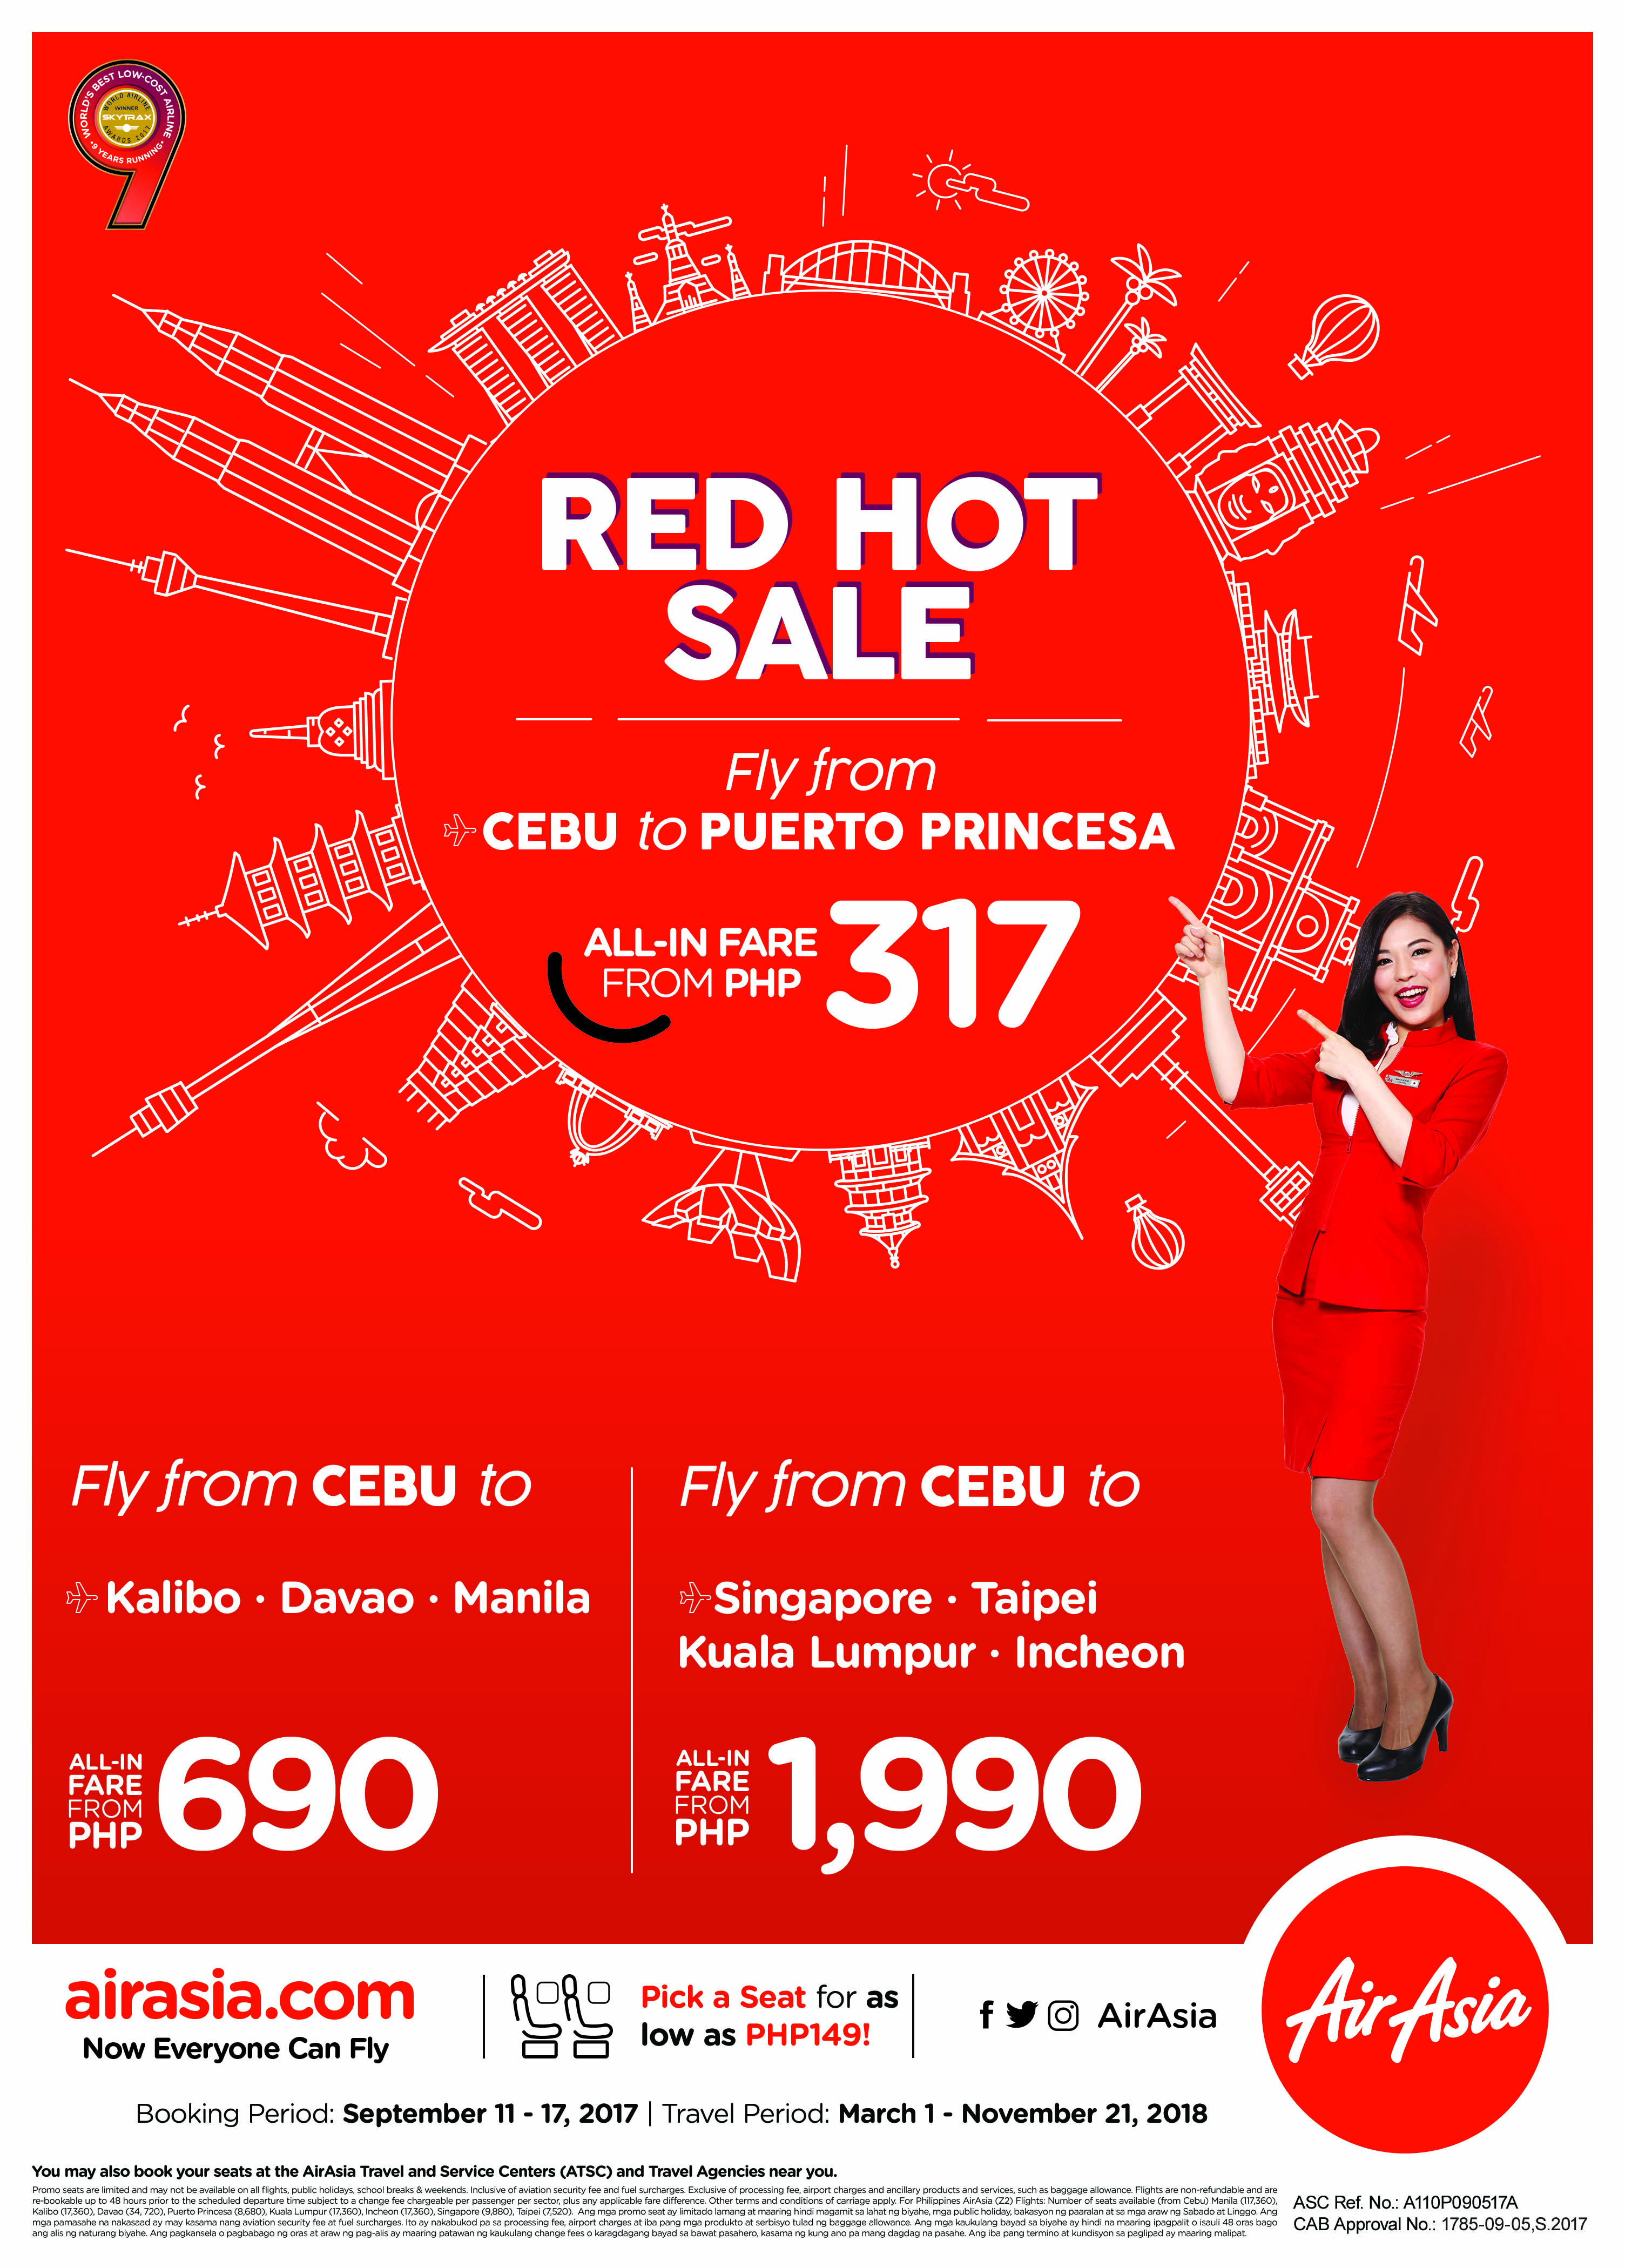 Red Hot Sale - Cebu